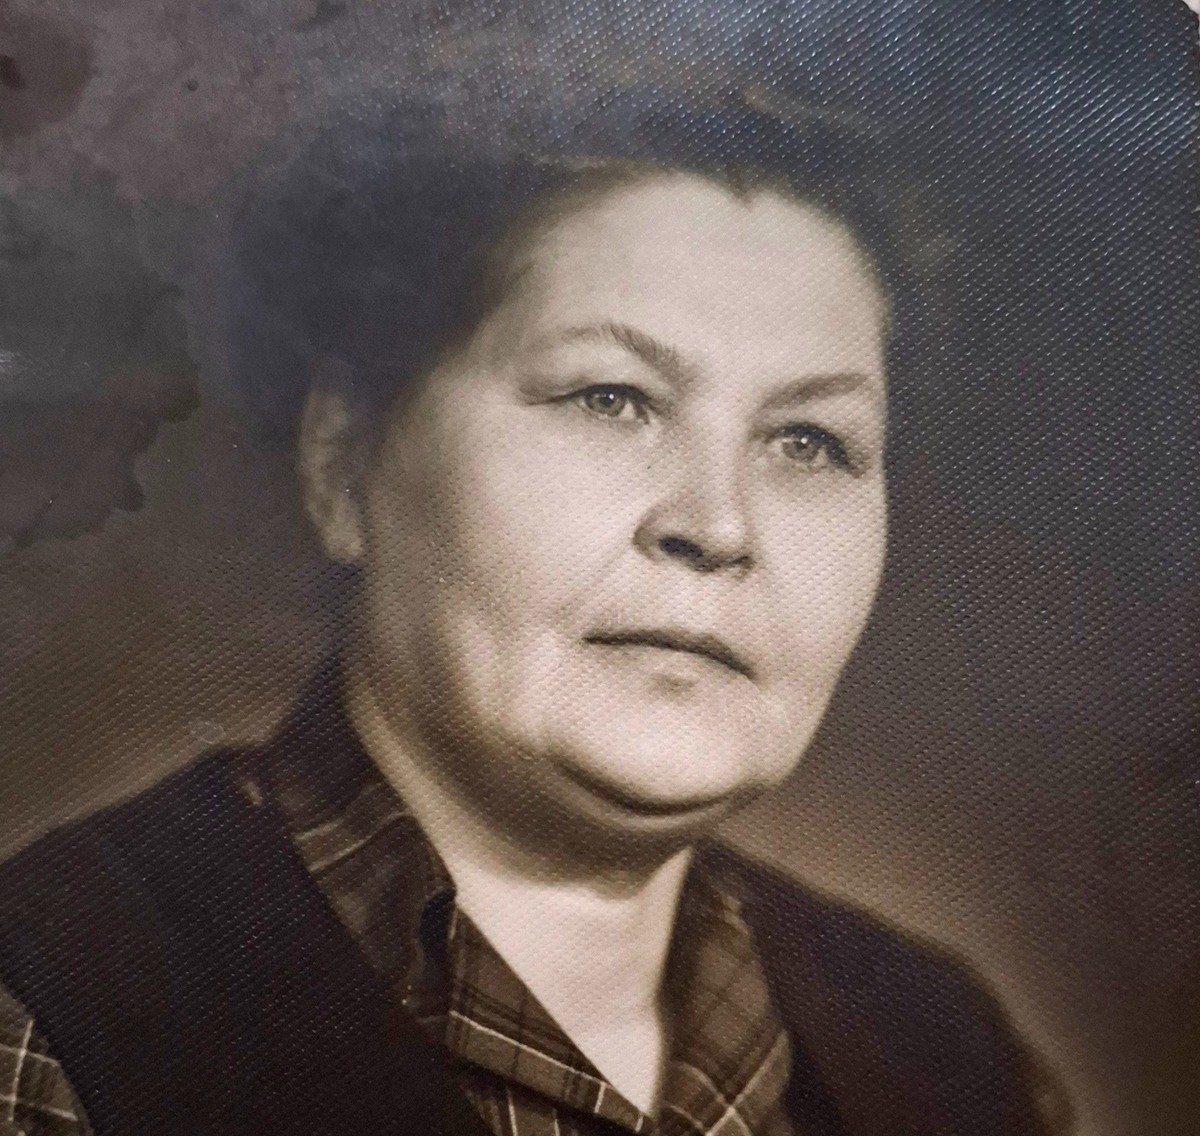 Бабушка героини публикации Анеля Савейко была репрессирована вместе с родителями. Фото из семейного архива